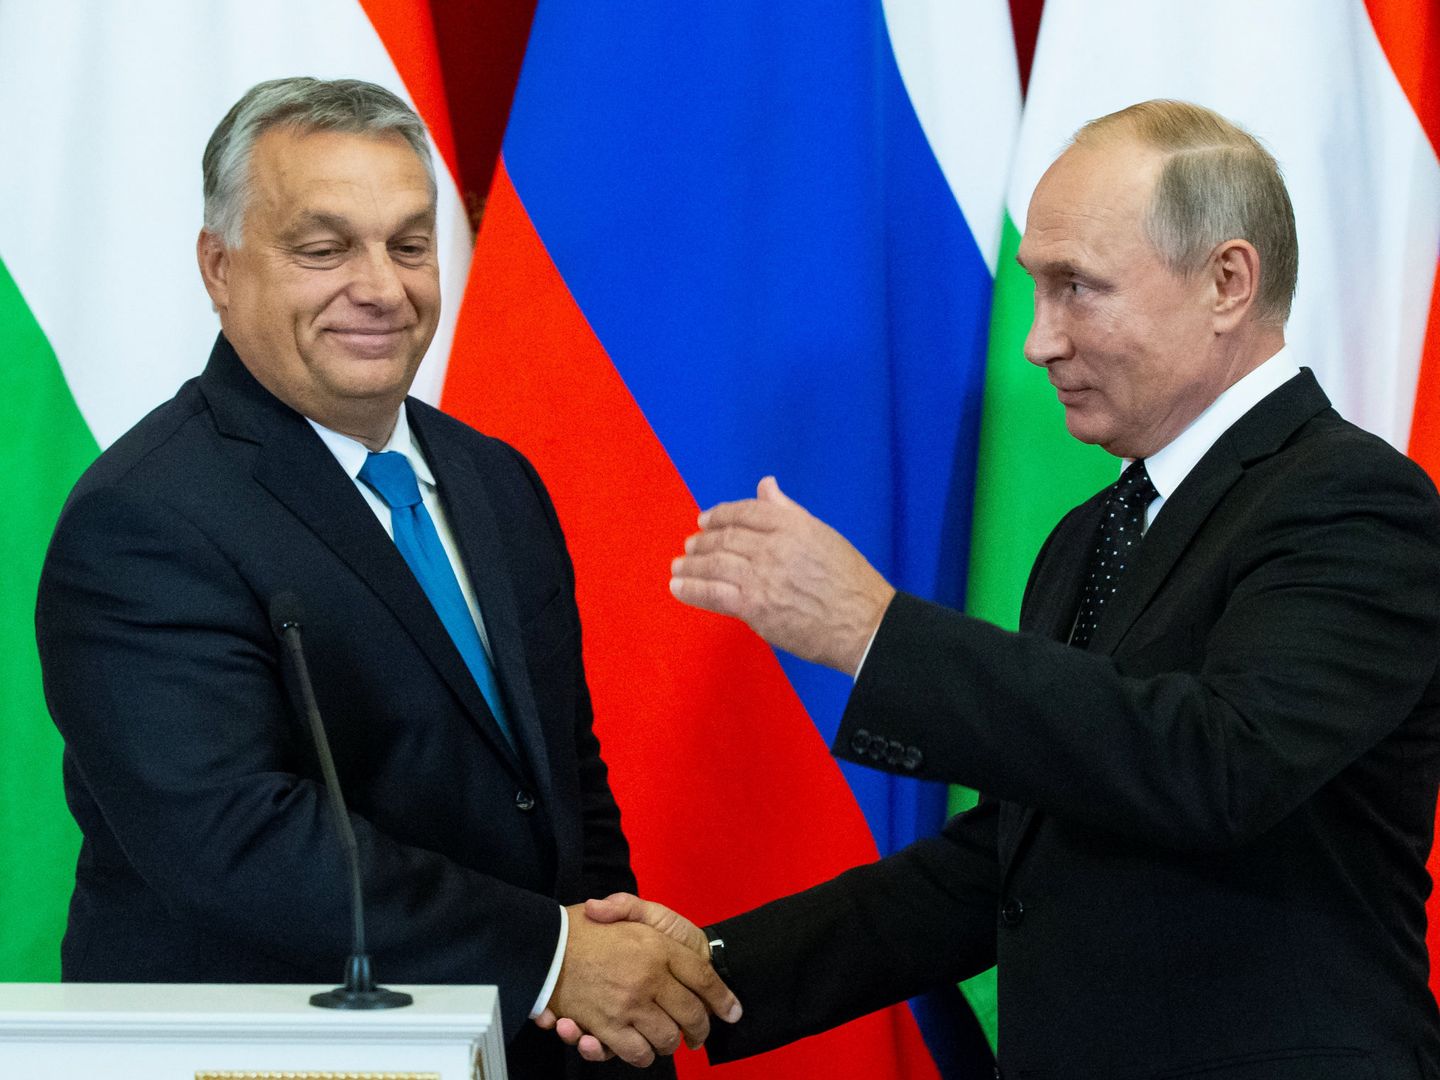 Orbán ha visitado a Putin en Moscú en la víspera del encuentro con sus socios de la UE. (Reuters)